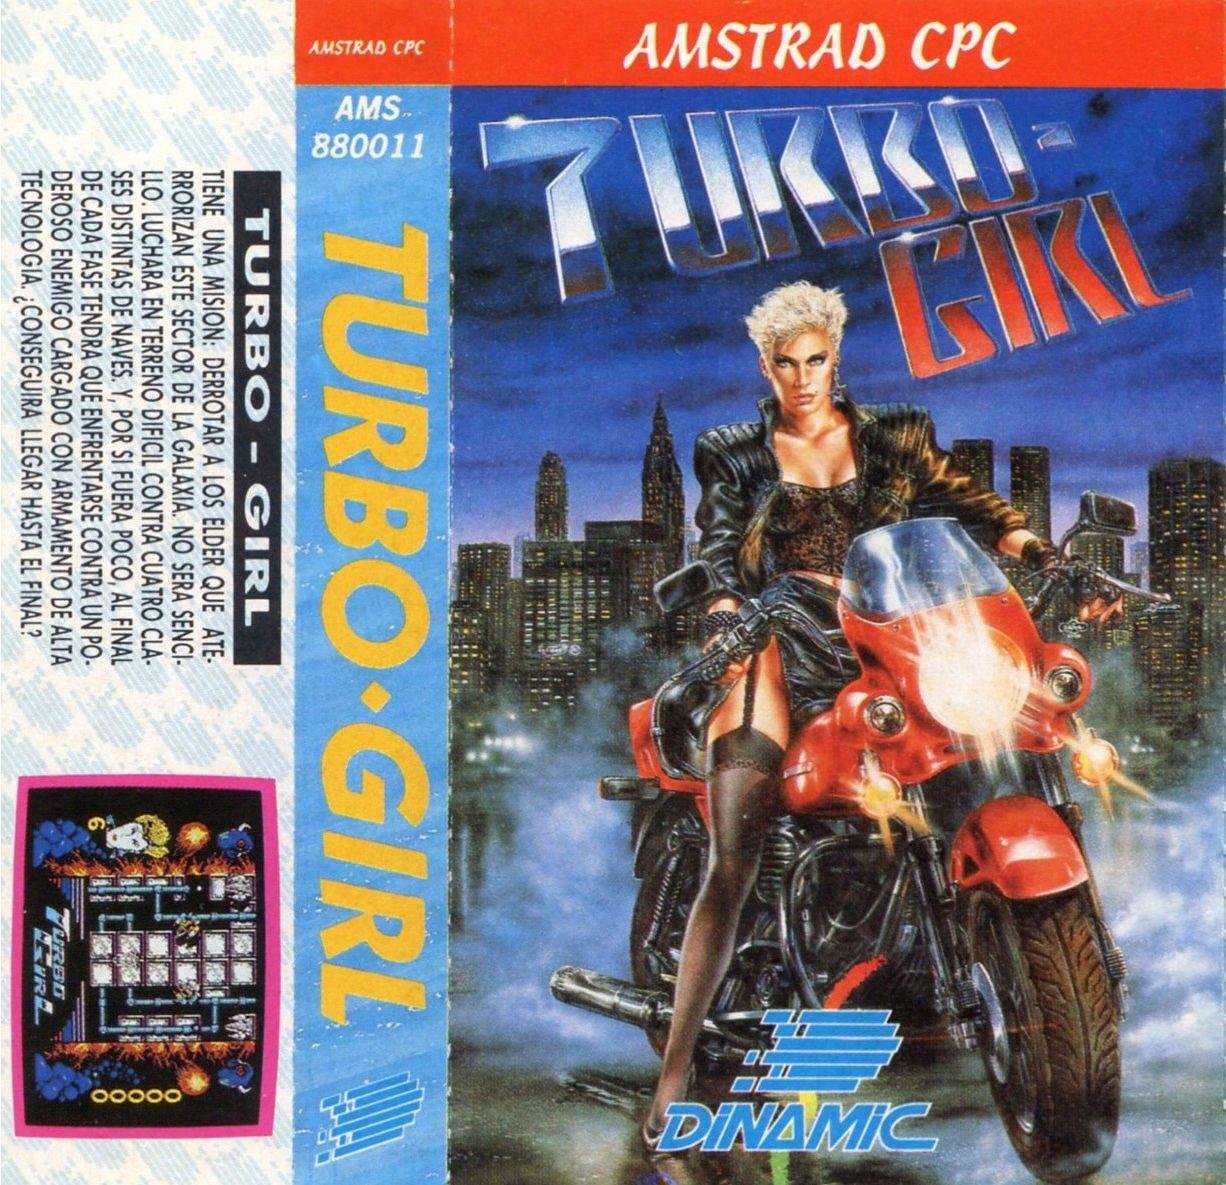 Caratula de Turbo Girl para Amstrad CPC